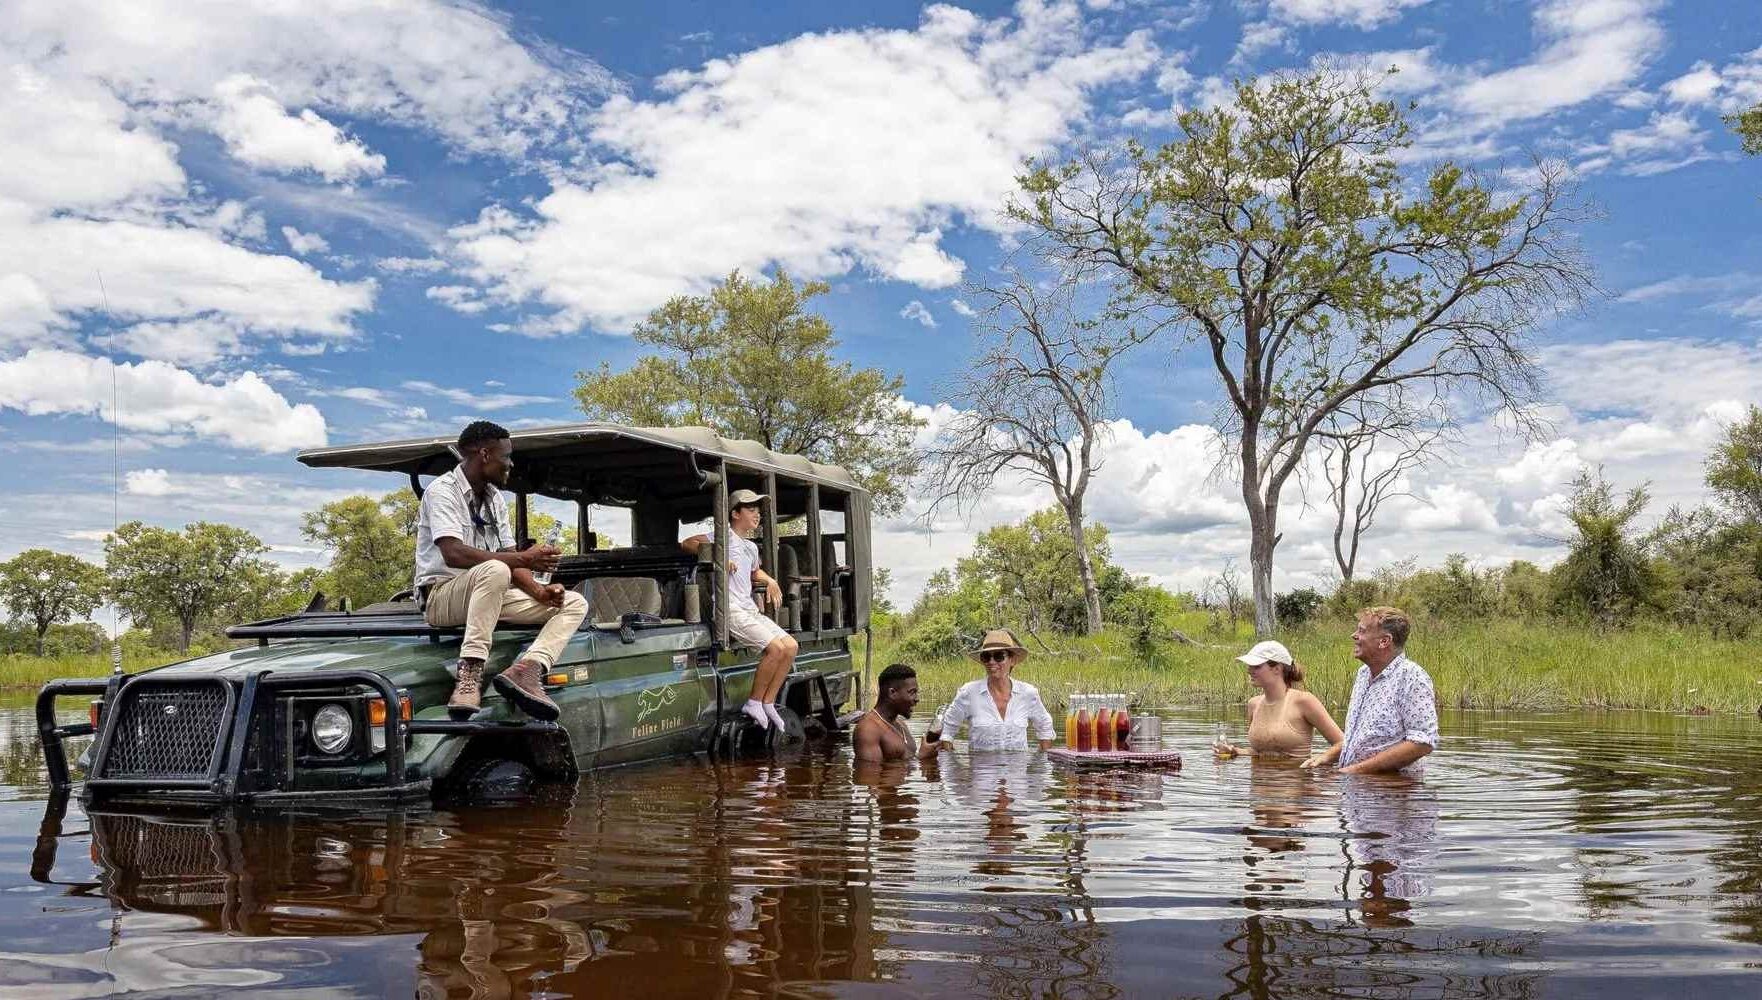 Met safari-jeep en al staan de gasten tot aan hun middel in de rivier voor de vrijdag middag borrel